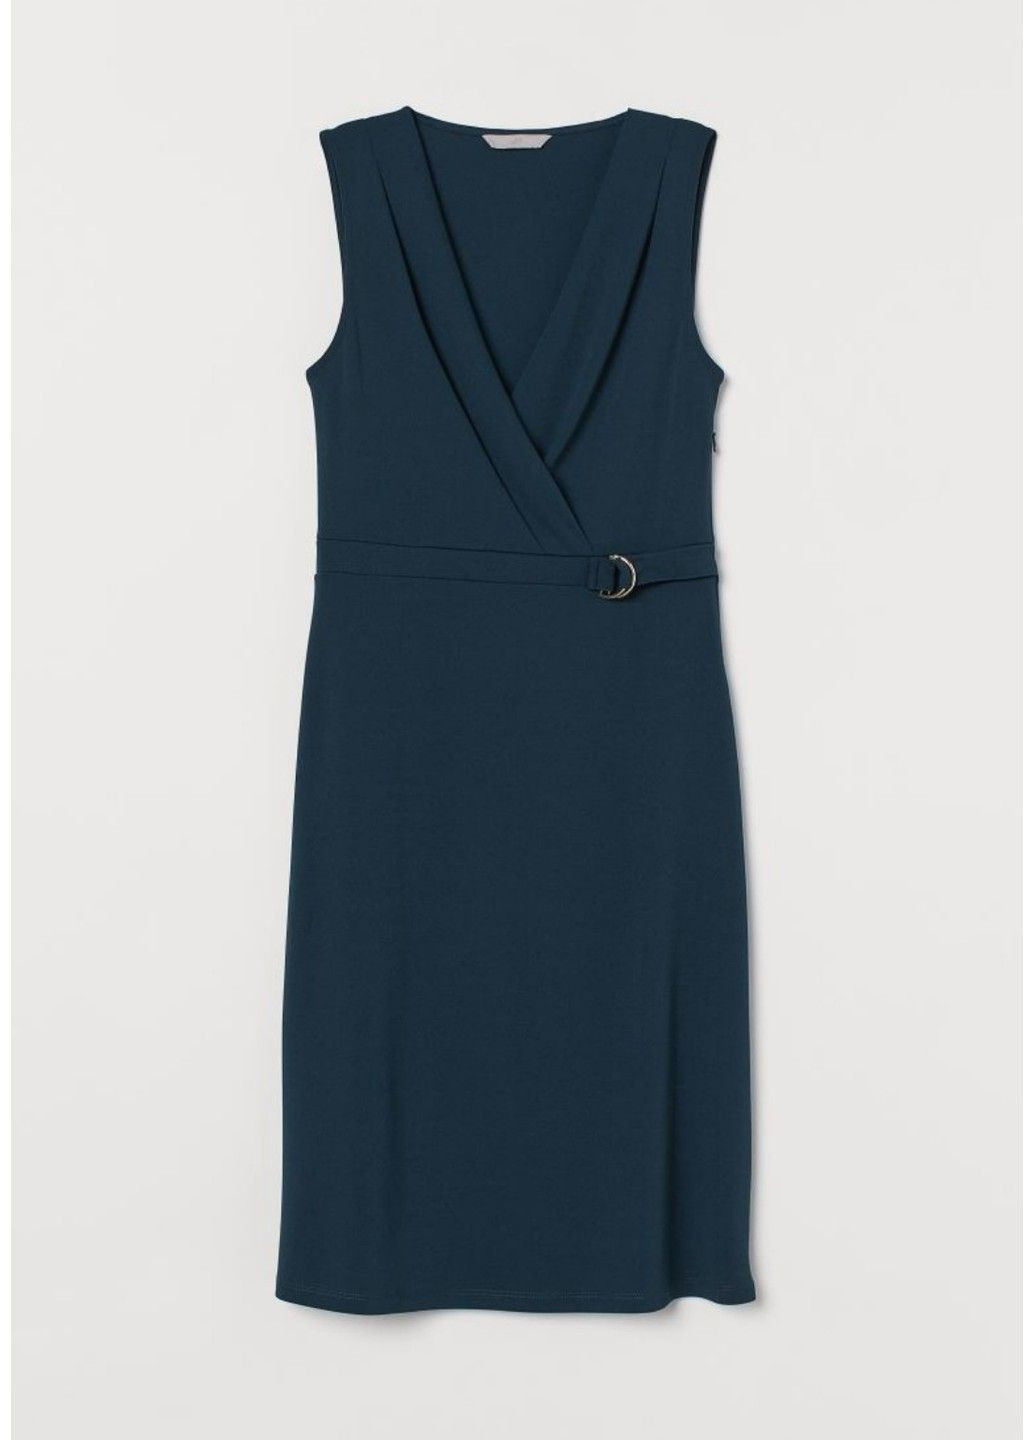 Темно-синее деловое женское трикотажное платье с v-образным вырезом н&м (56716) xs темно-синее H&M